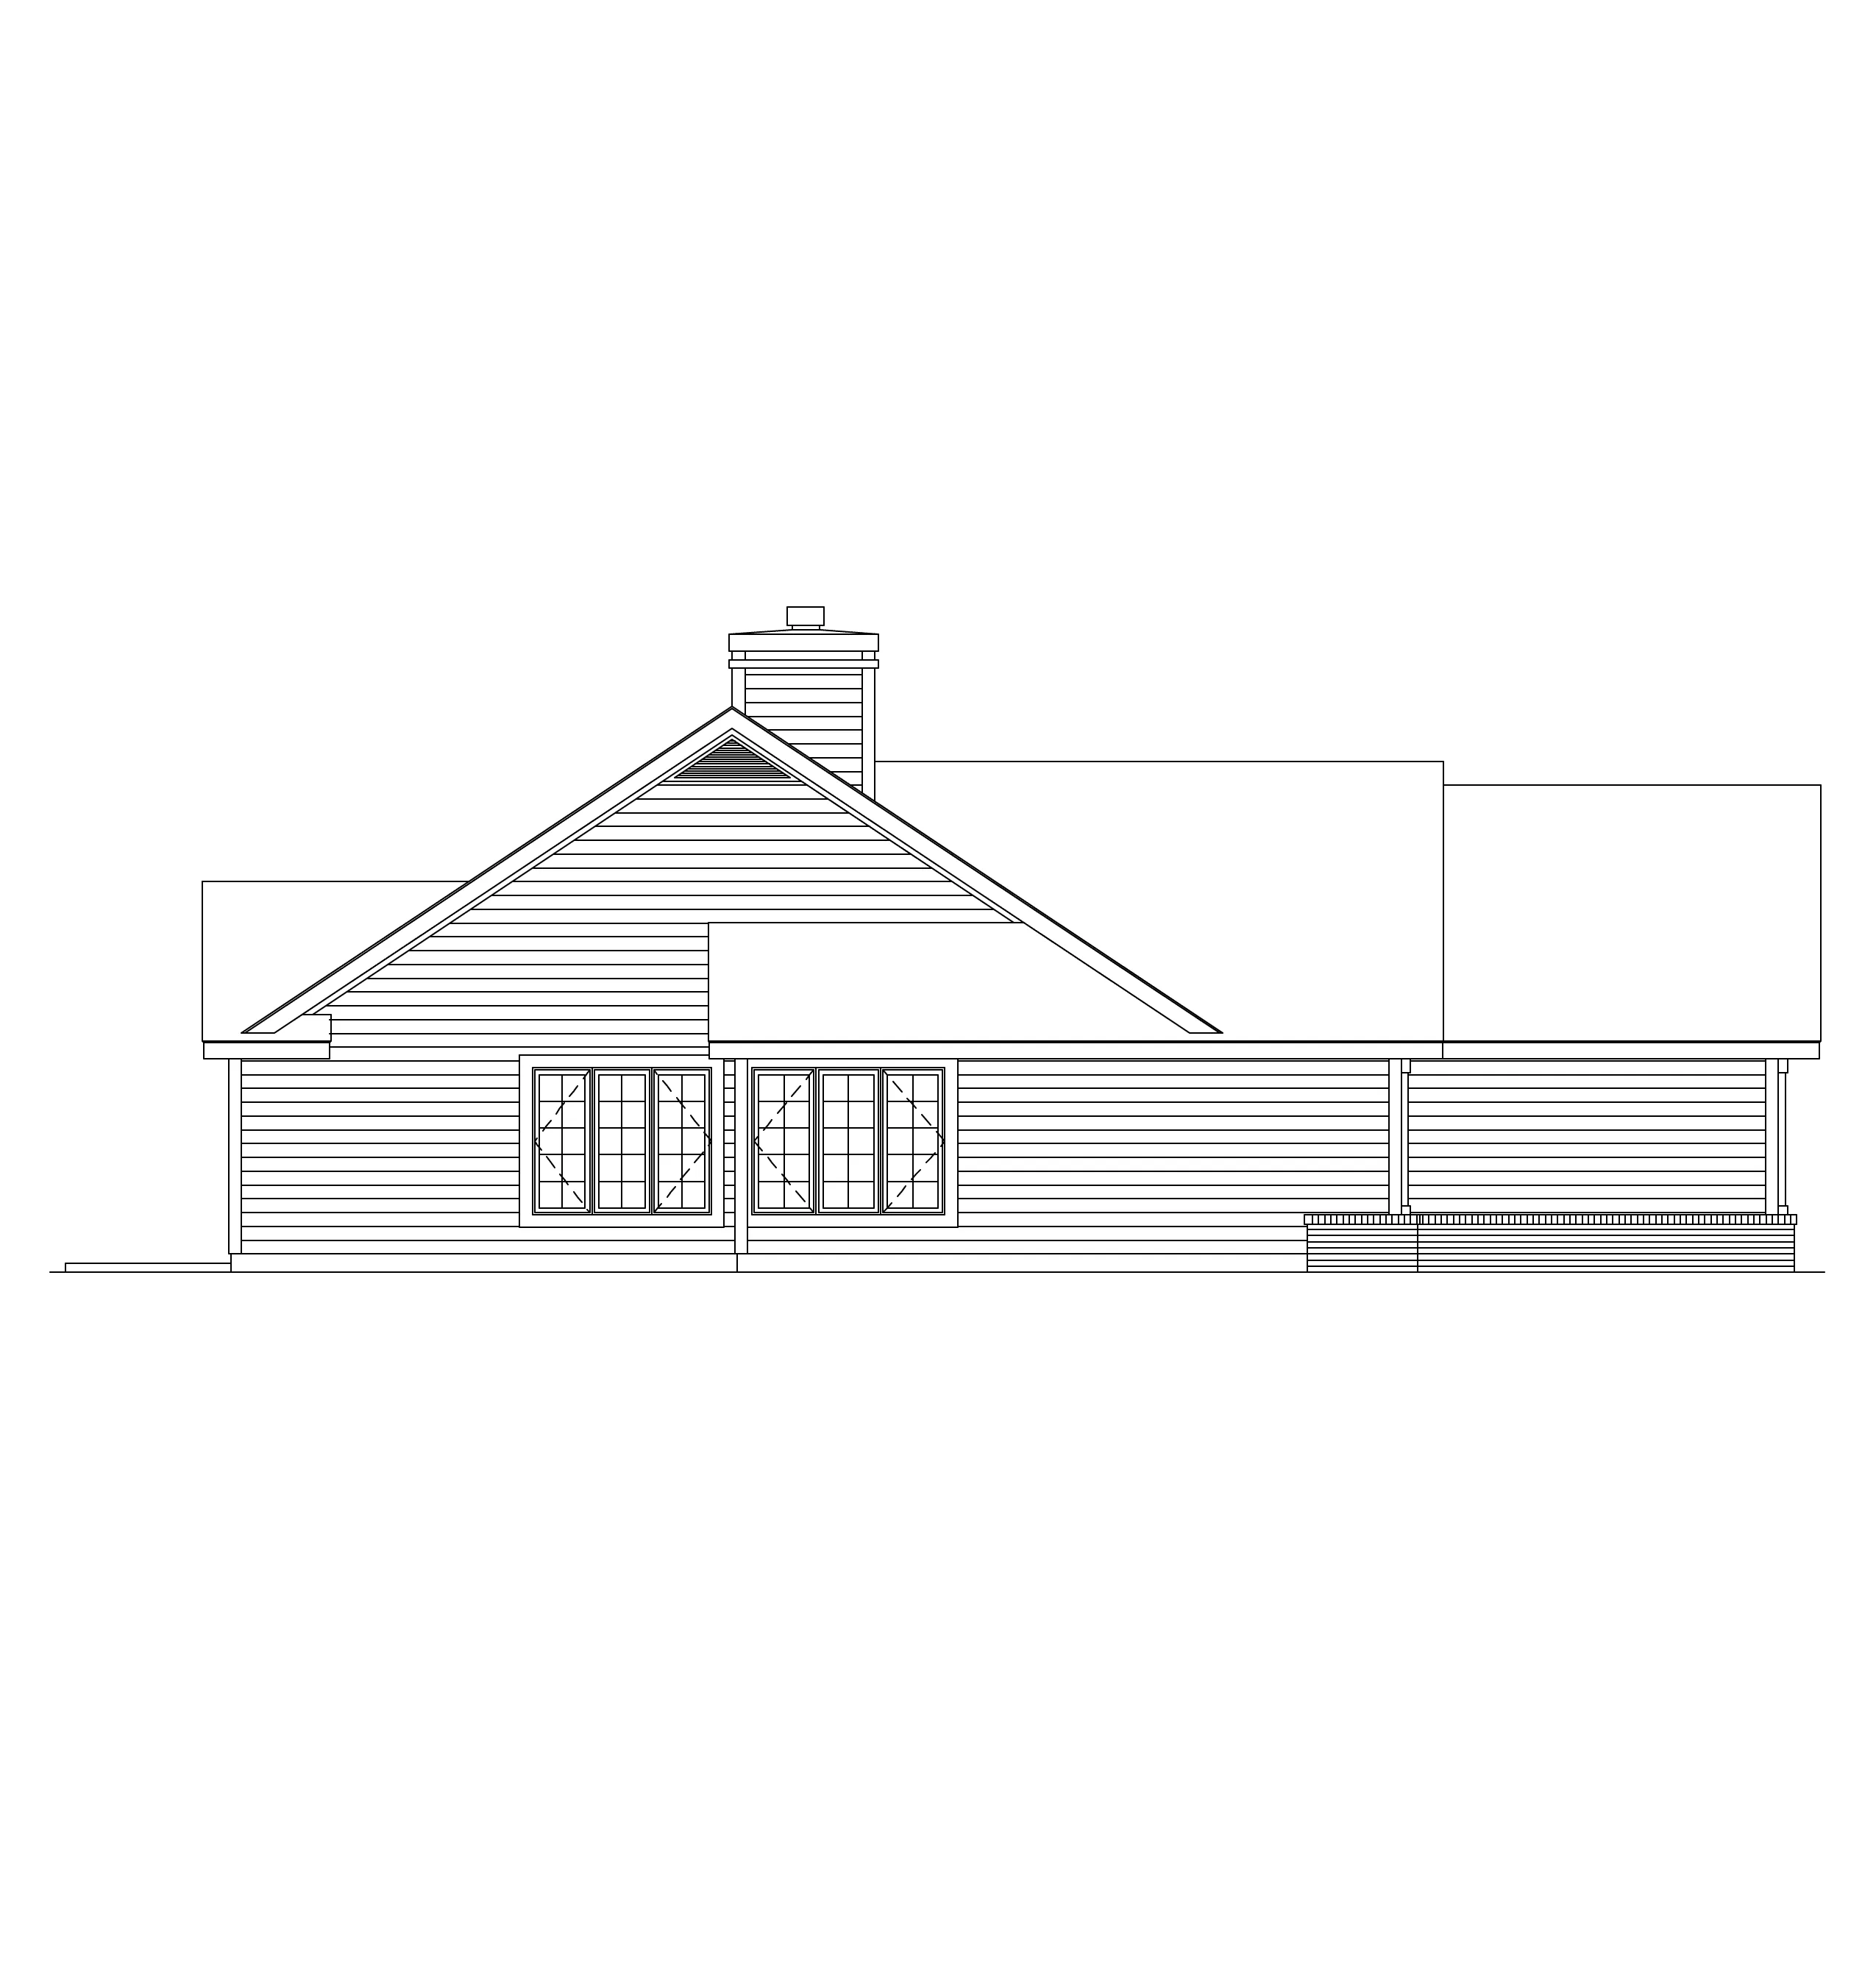 Sunbelt House Plan Left Elevation - Taylor Adobe Southwestern Home 022D-0027 - Shop House Plans and More